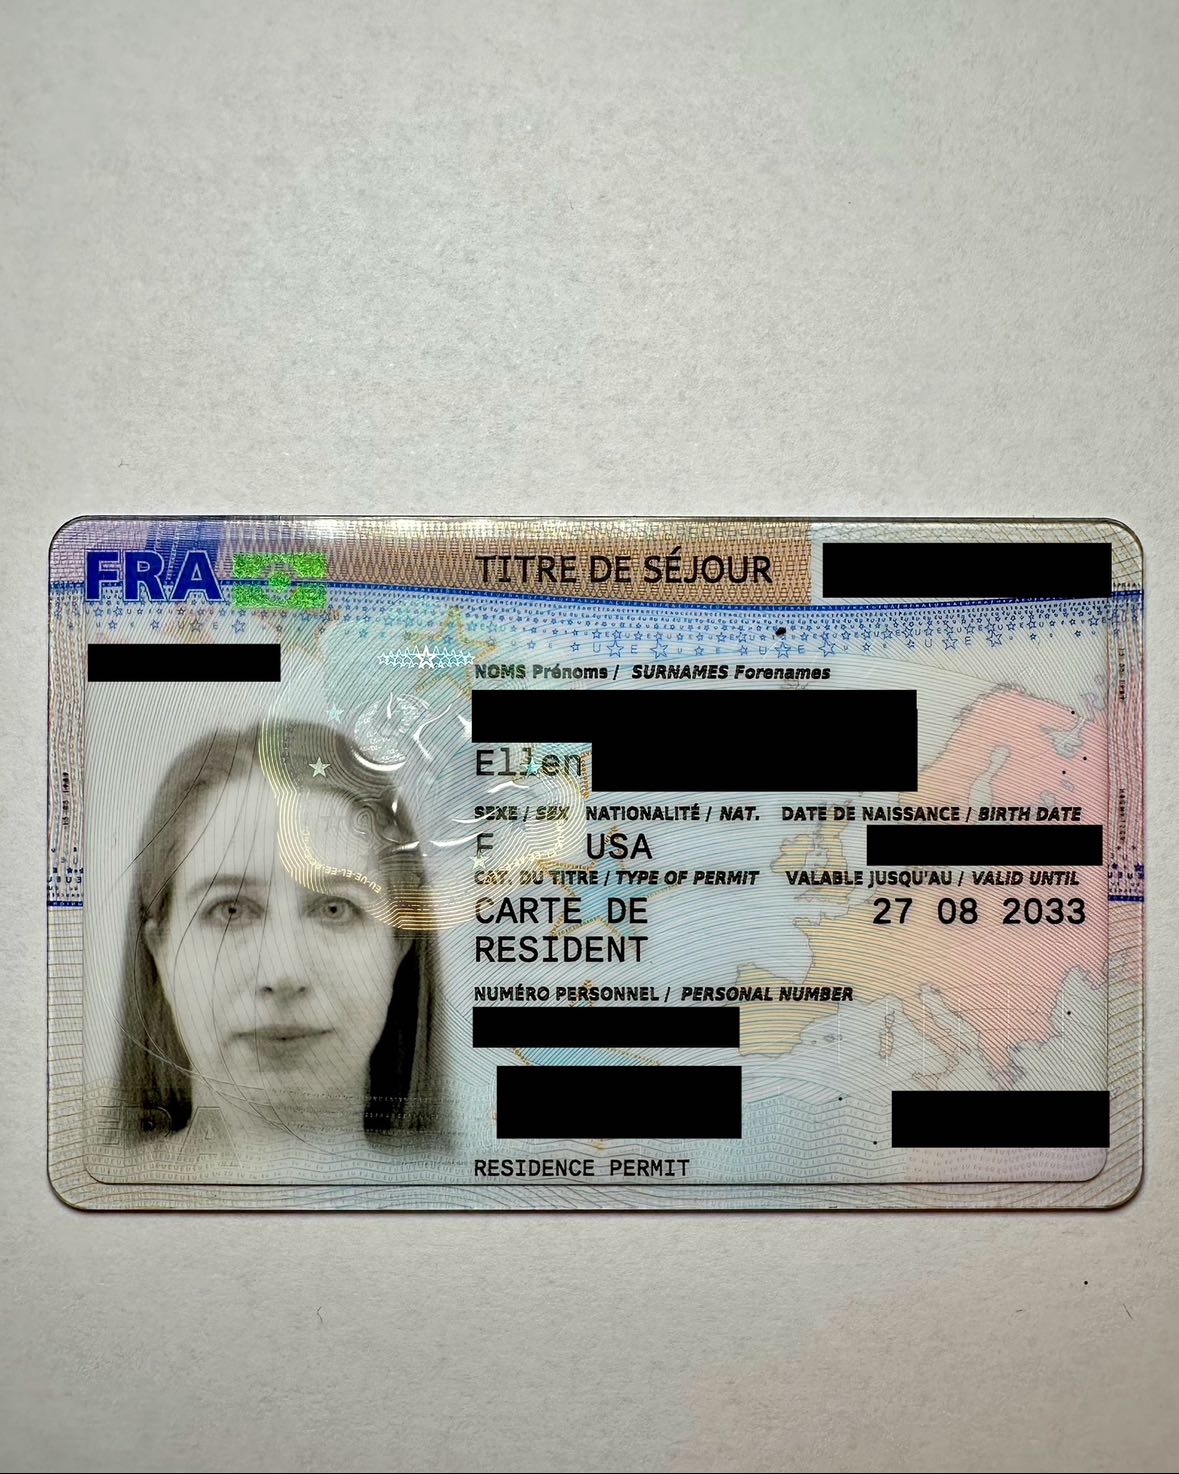 Online Renewal of “Vie privée et familiale” Visa or Carte de Séjour